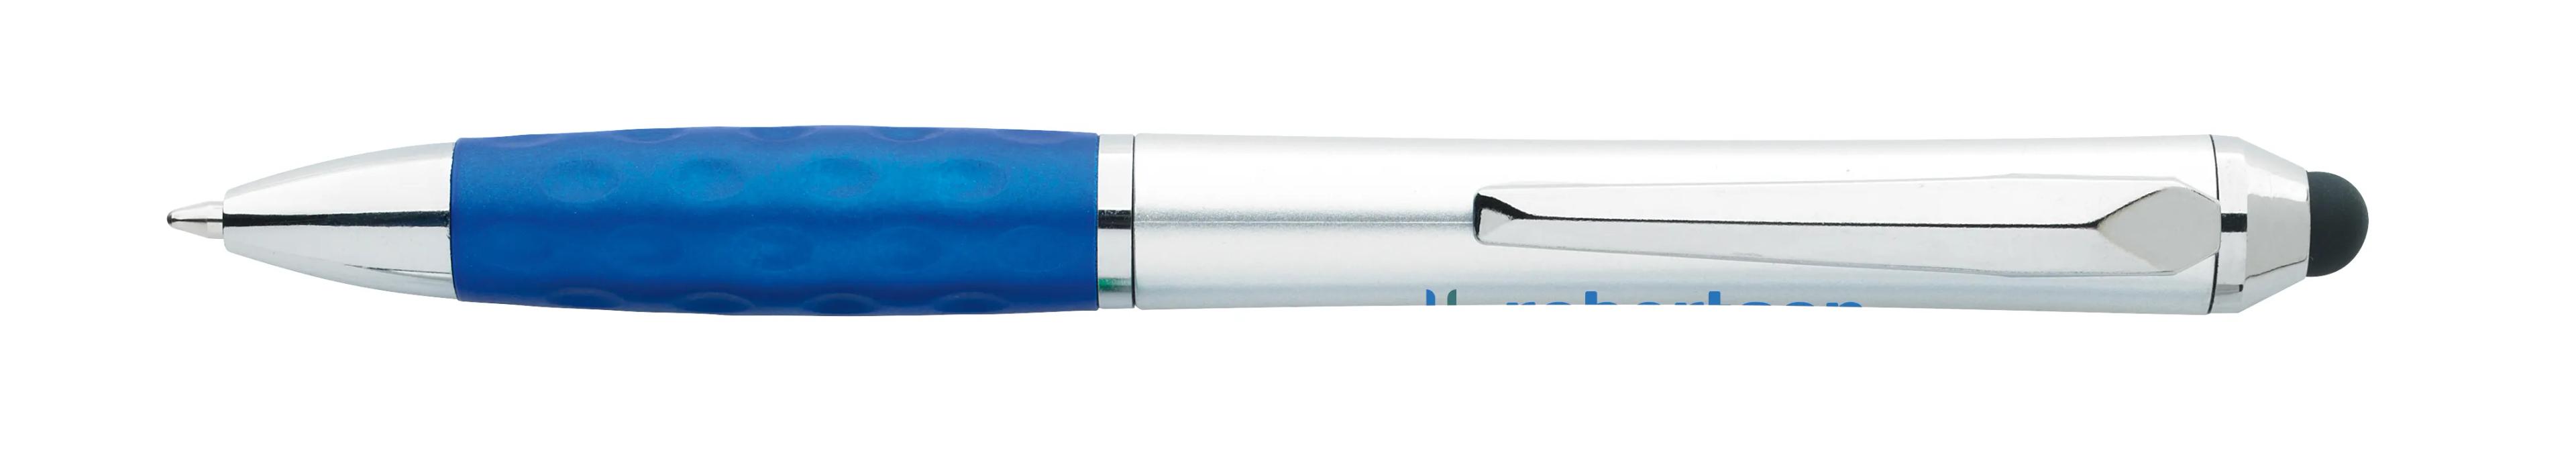 Tev Silver Stylus Pen 54 of 55